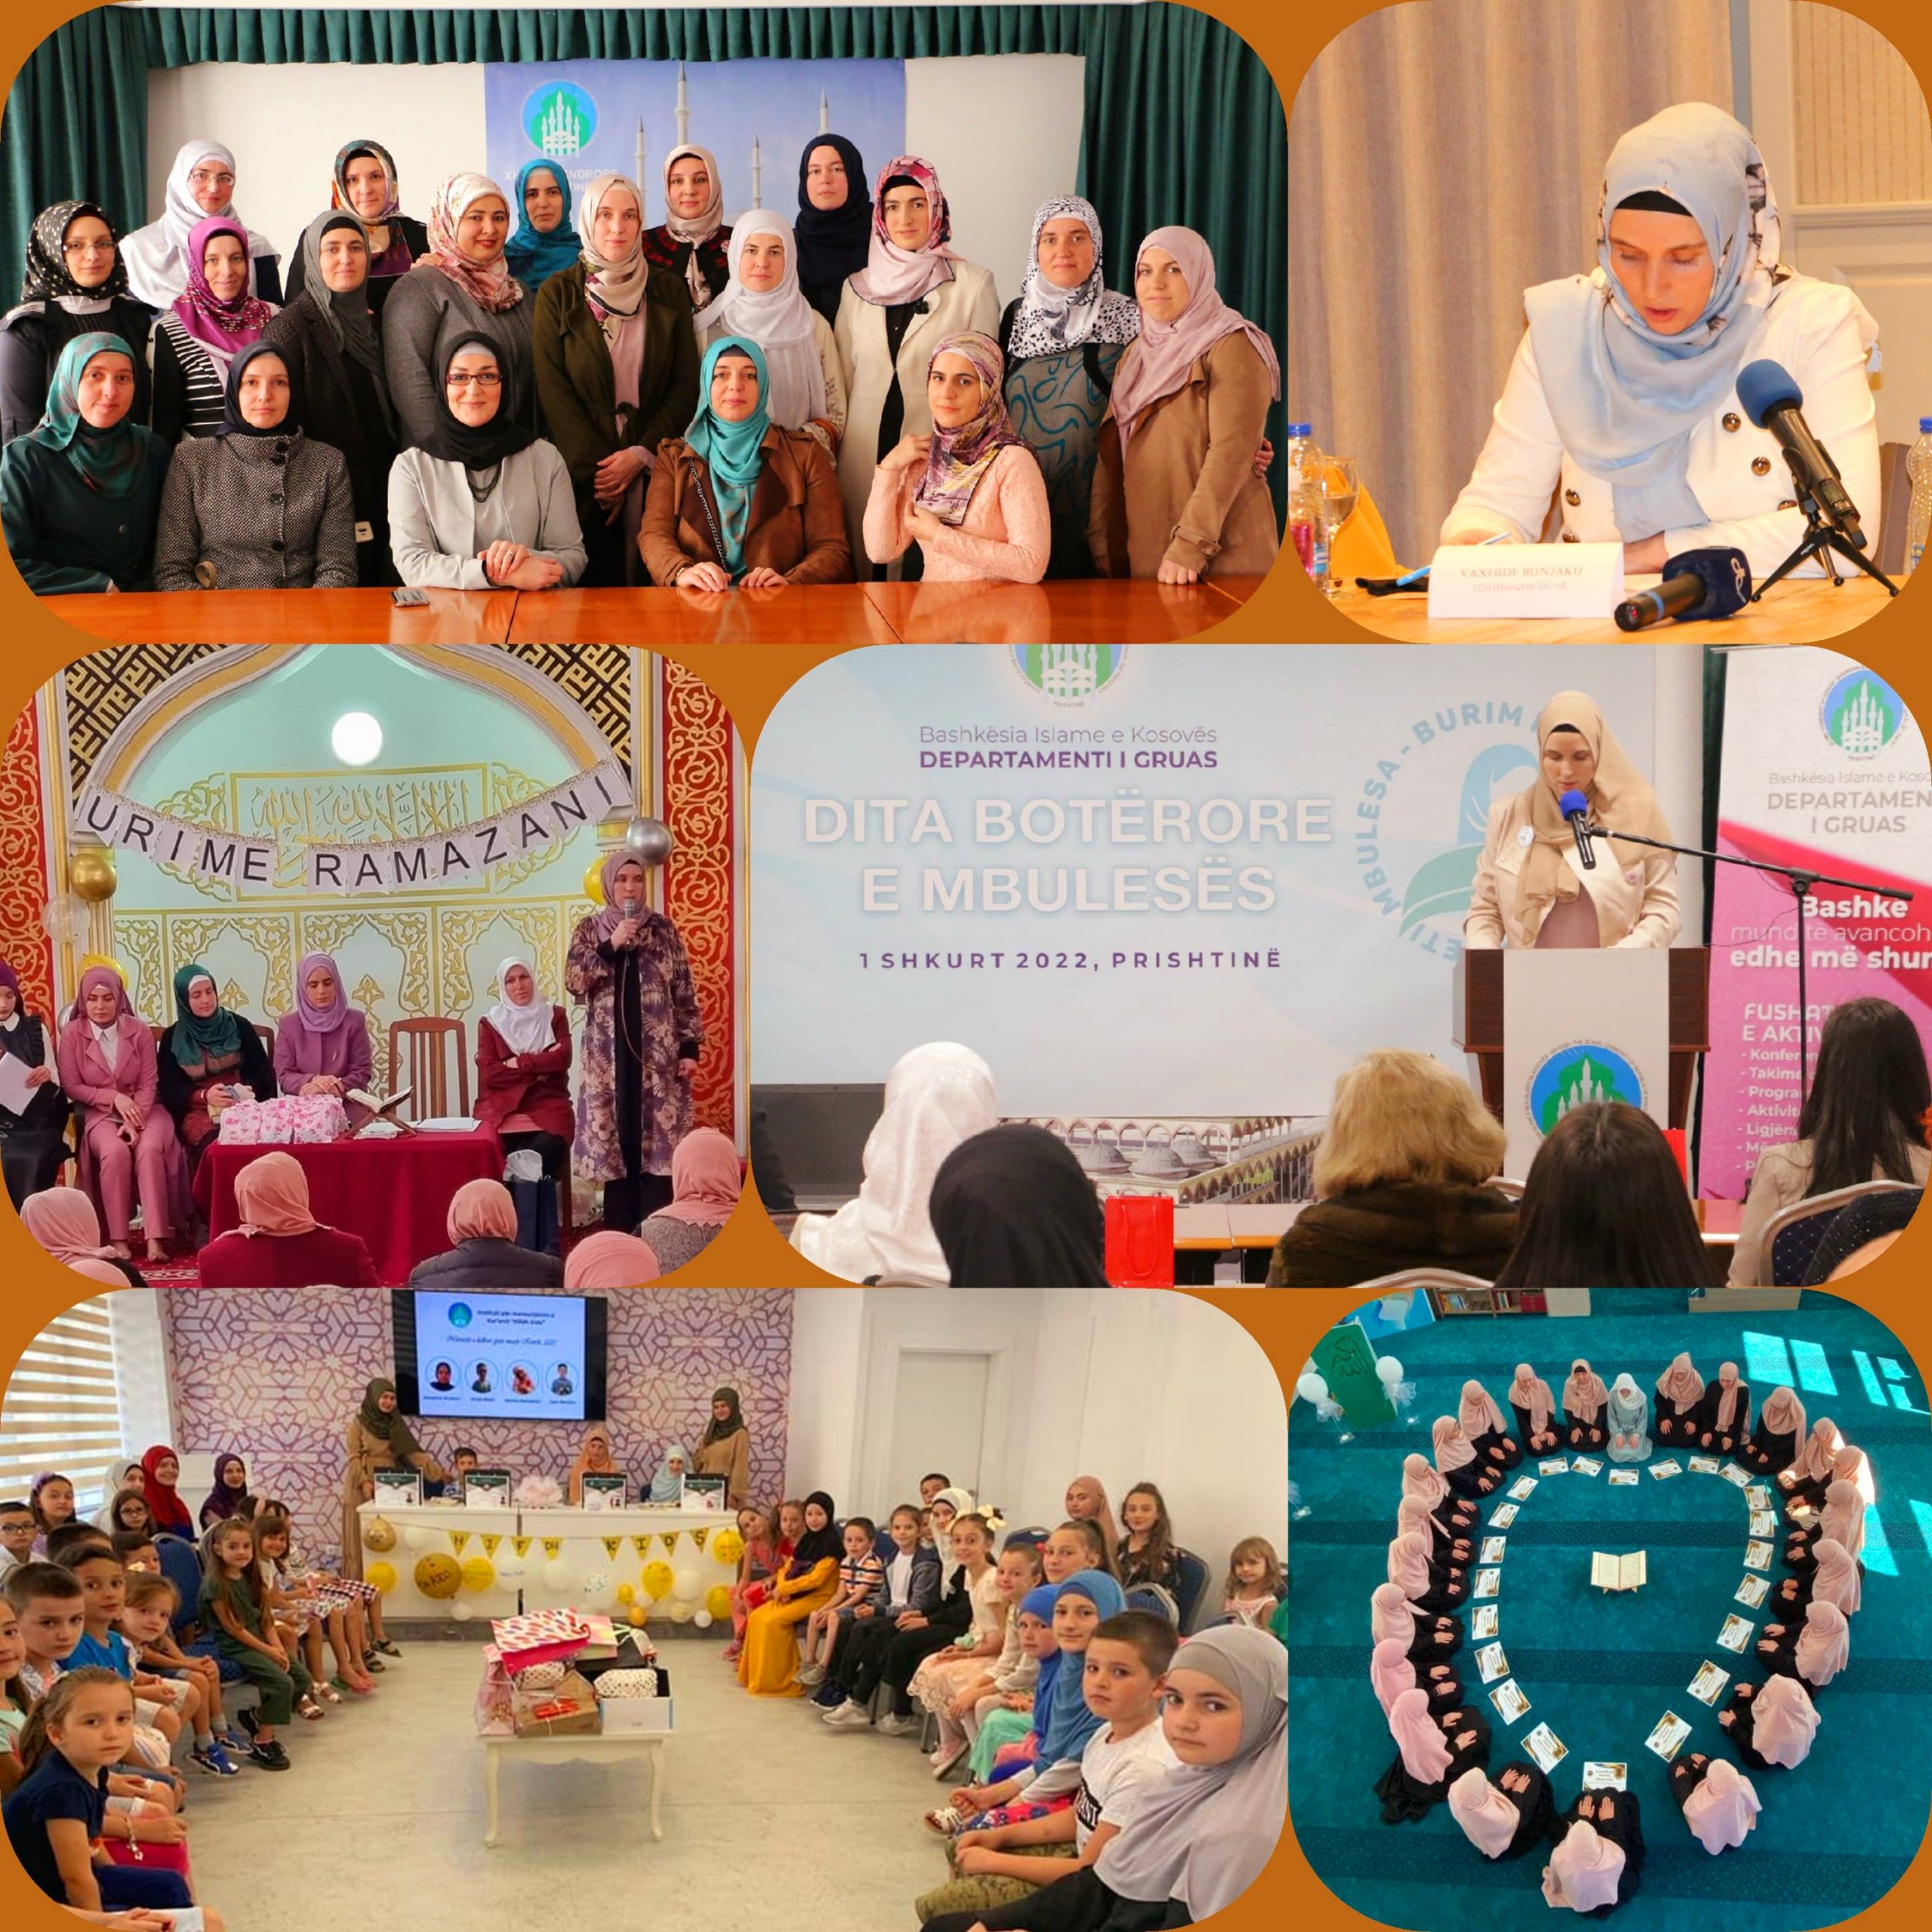 تم إنشاء "قسم المرأة" في المشيخة الإسلامية عام 2005م وهو مكرَّس للنهوض بالحياة الدينية للمرأة في كوسوفا